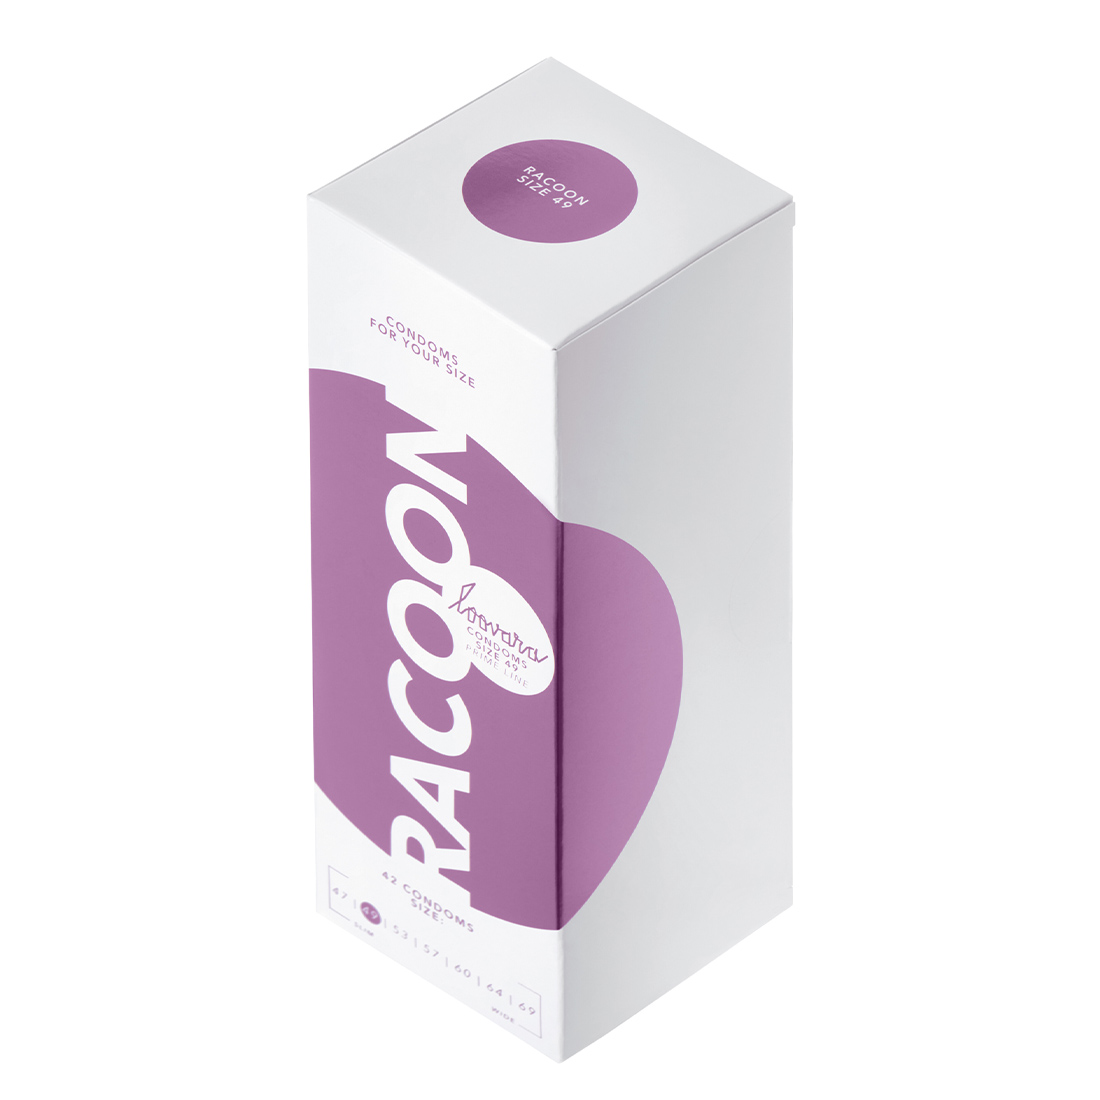 Loovara Racoon 49 prezerwatywy dla obwodu 10 – 11 cm